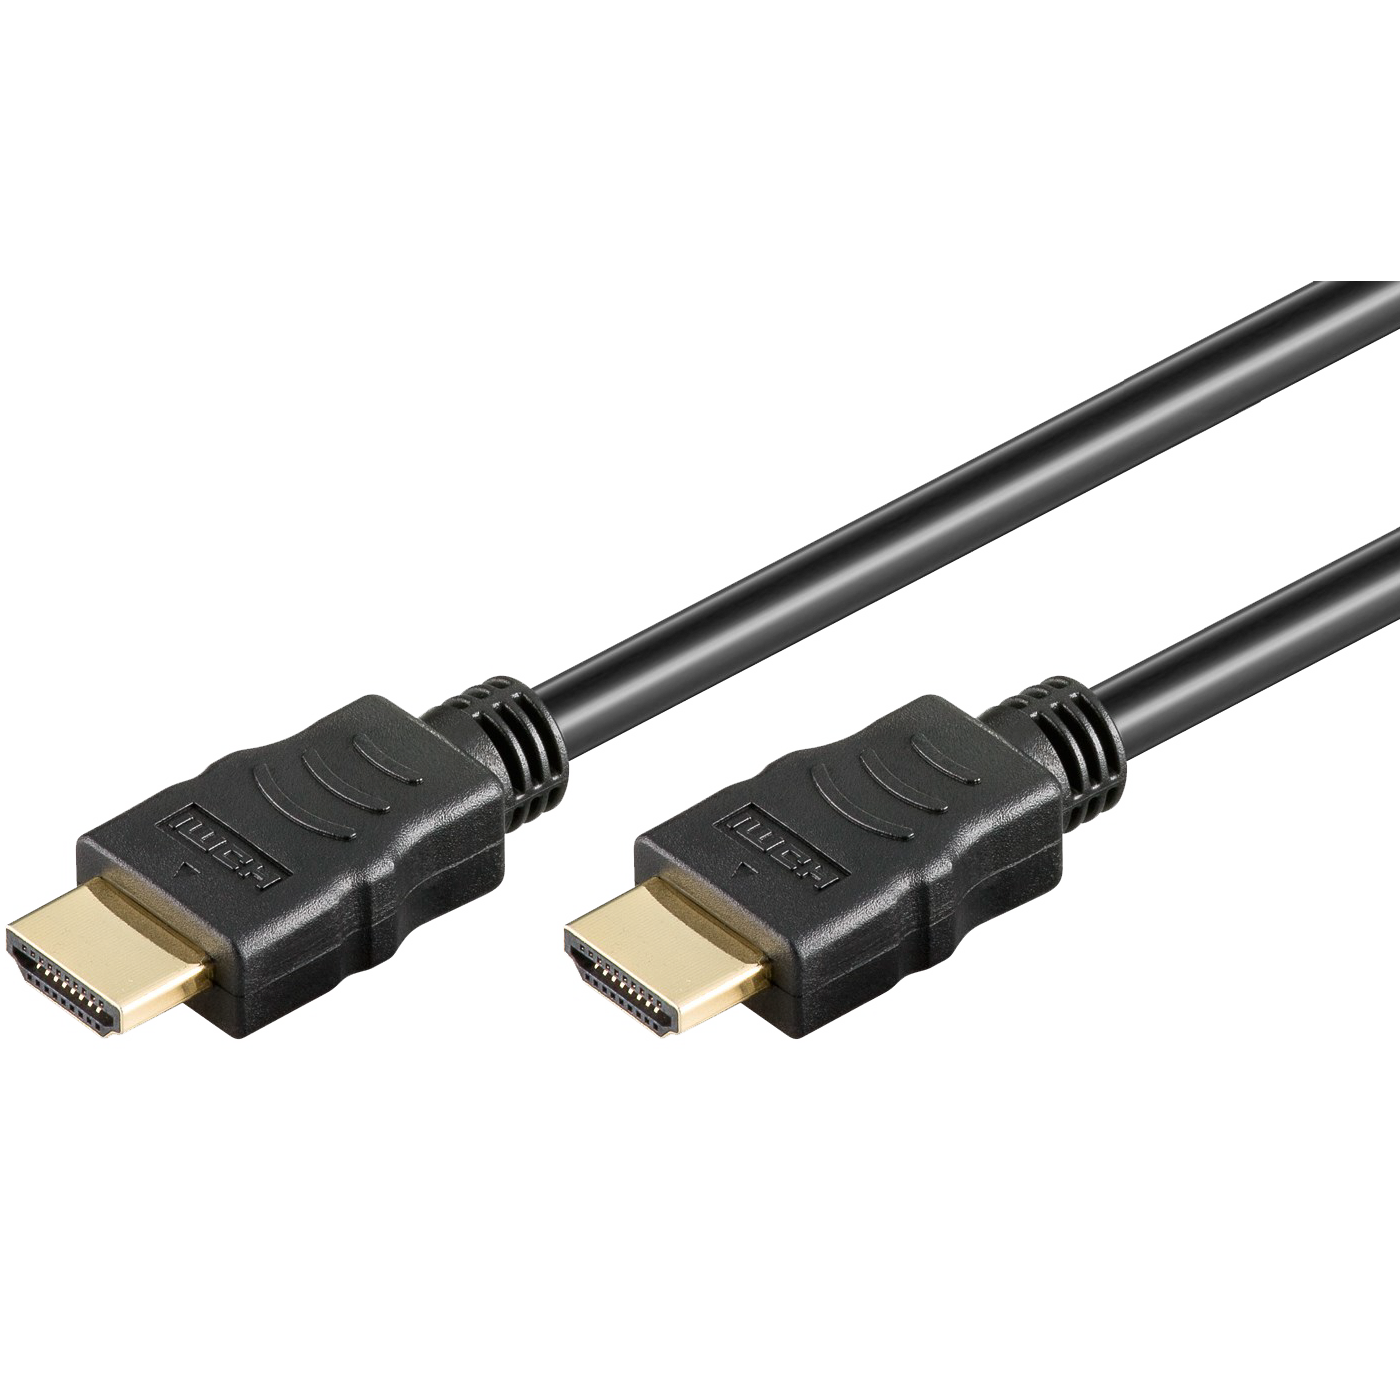 HDMI kabl, 1.0 met, ver. 1.4